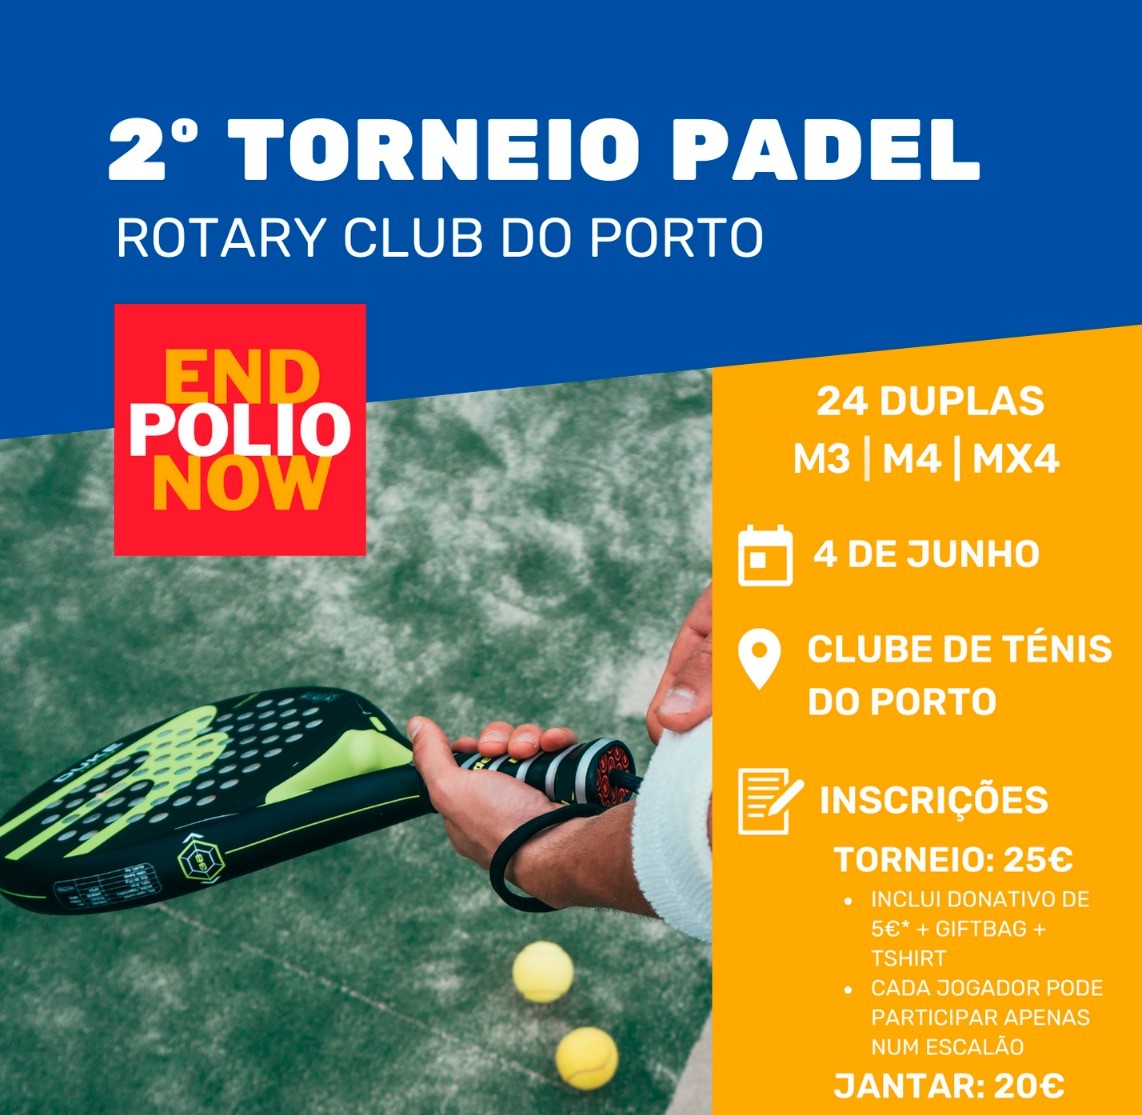 2º Torneio de Padel - Rotary Club do Porto 